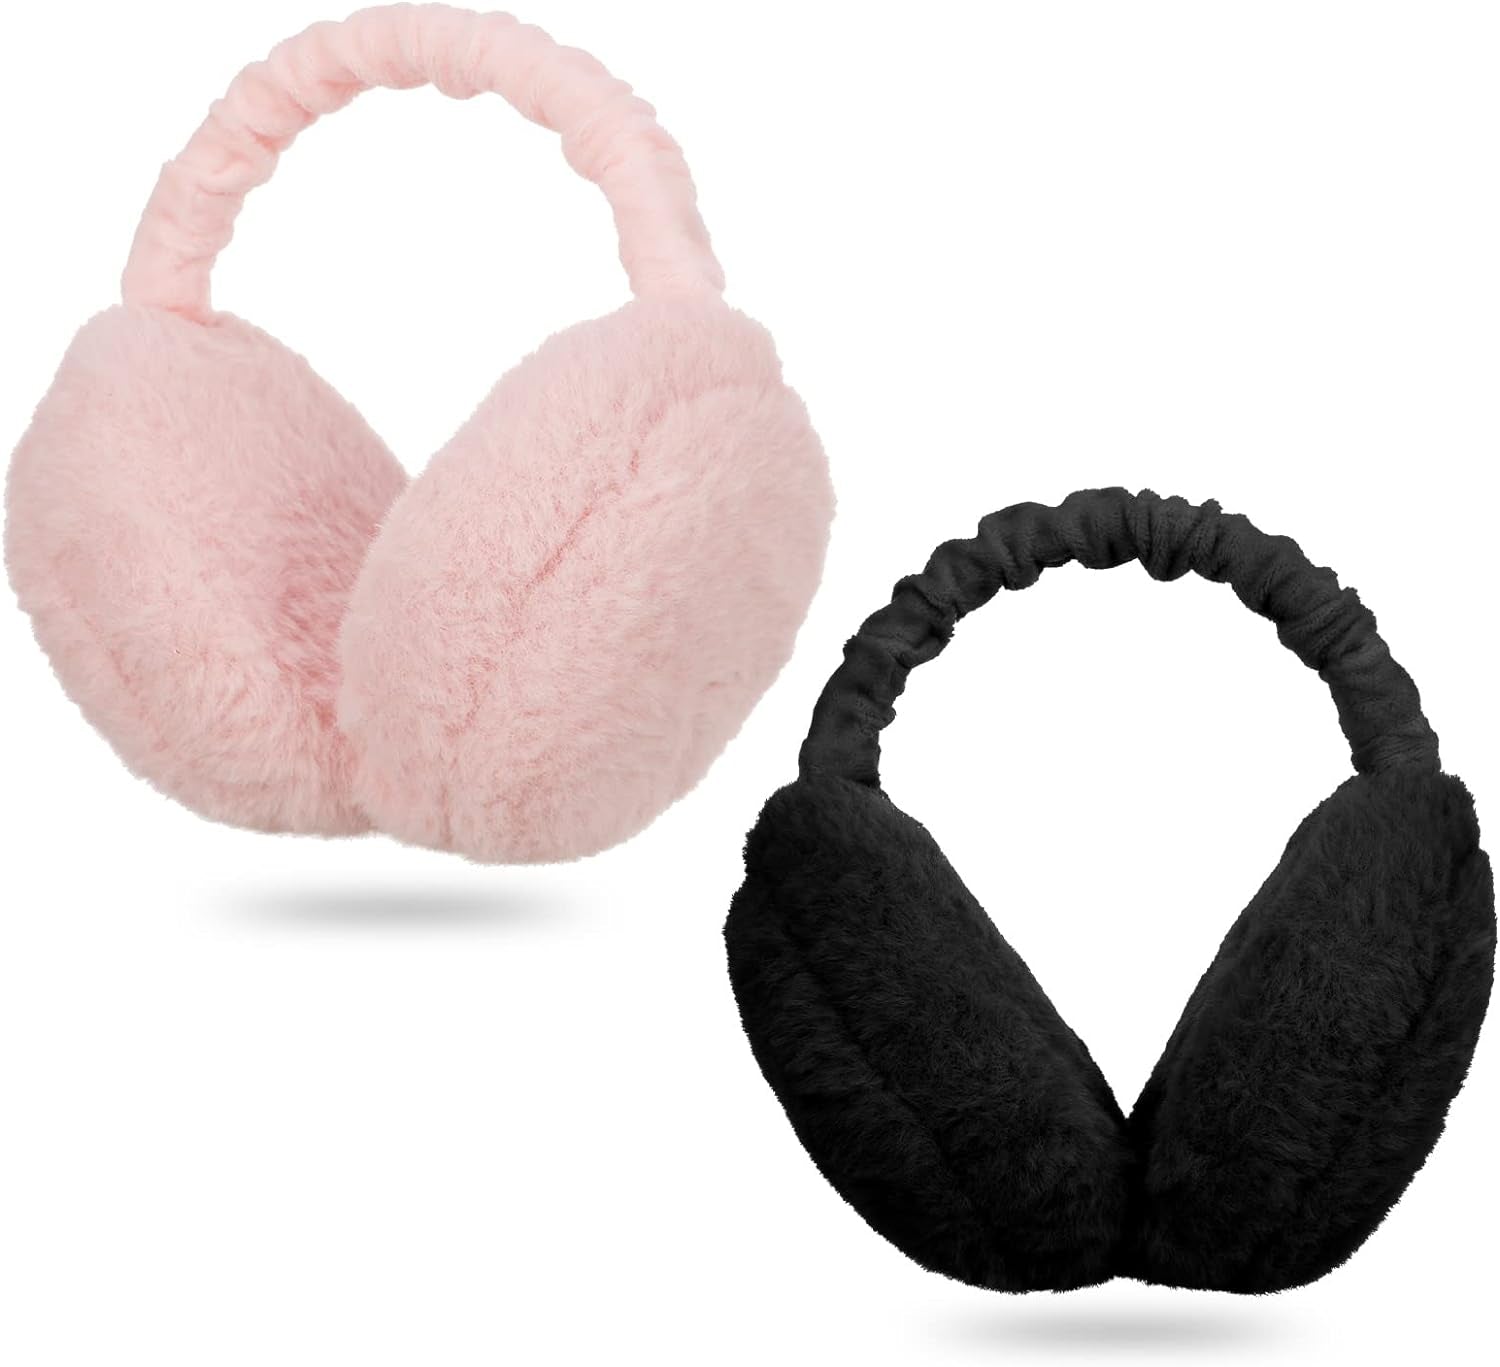 Women Earmuffs,2Pcs Winter Ear Muffs Adjustable Faux Fur Ear Warmer Warm Windproof Plush Earmuffs Foldable for Men Girl Thanksgiving